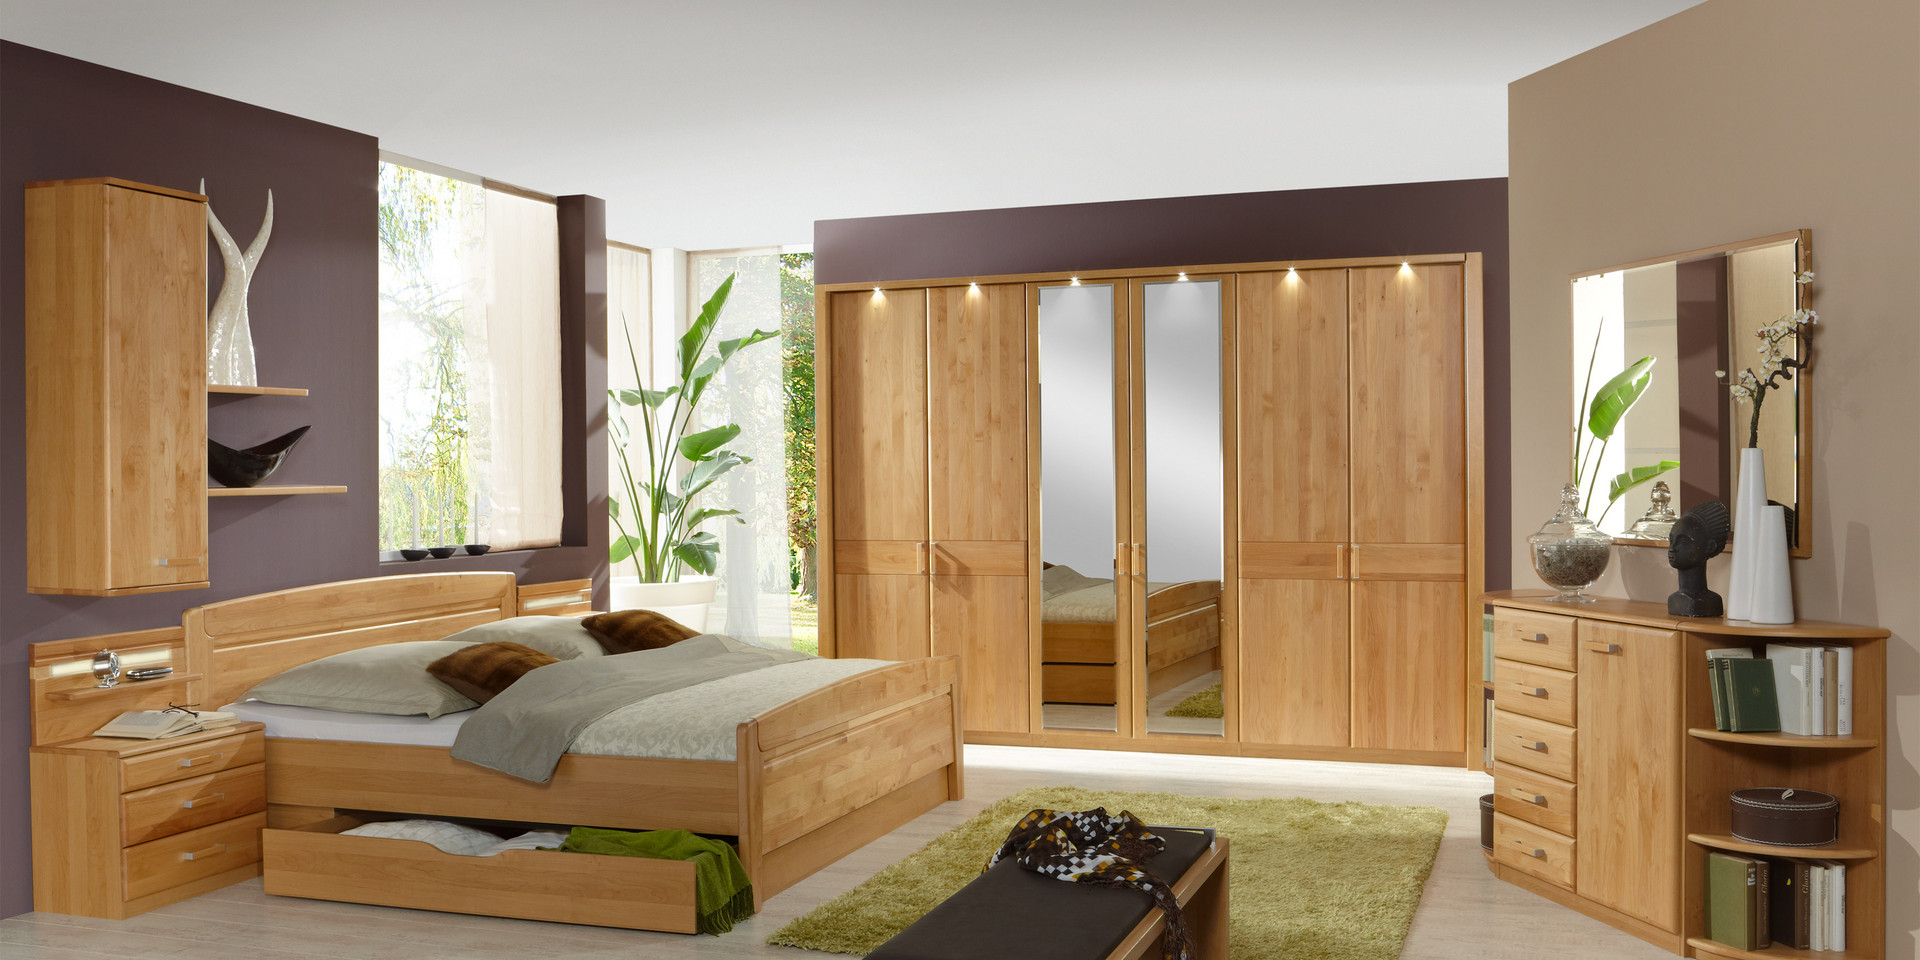 Erleben Sie das Schlafzimmer Lausanne | Möbelhersteller Wiemann - Oeseder  Möbel-Industrie